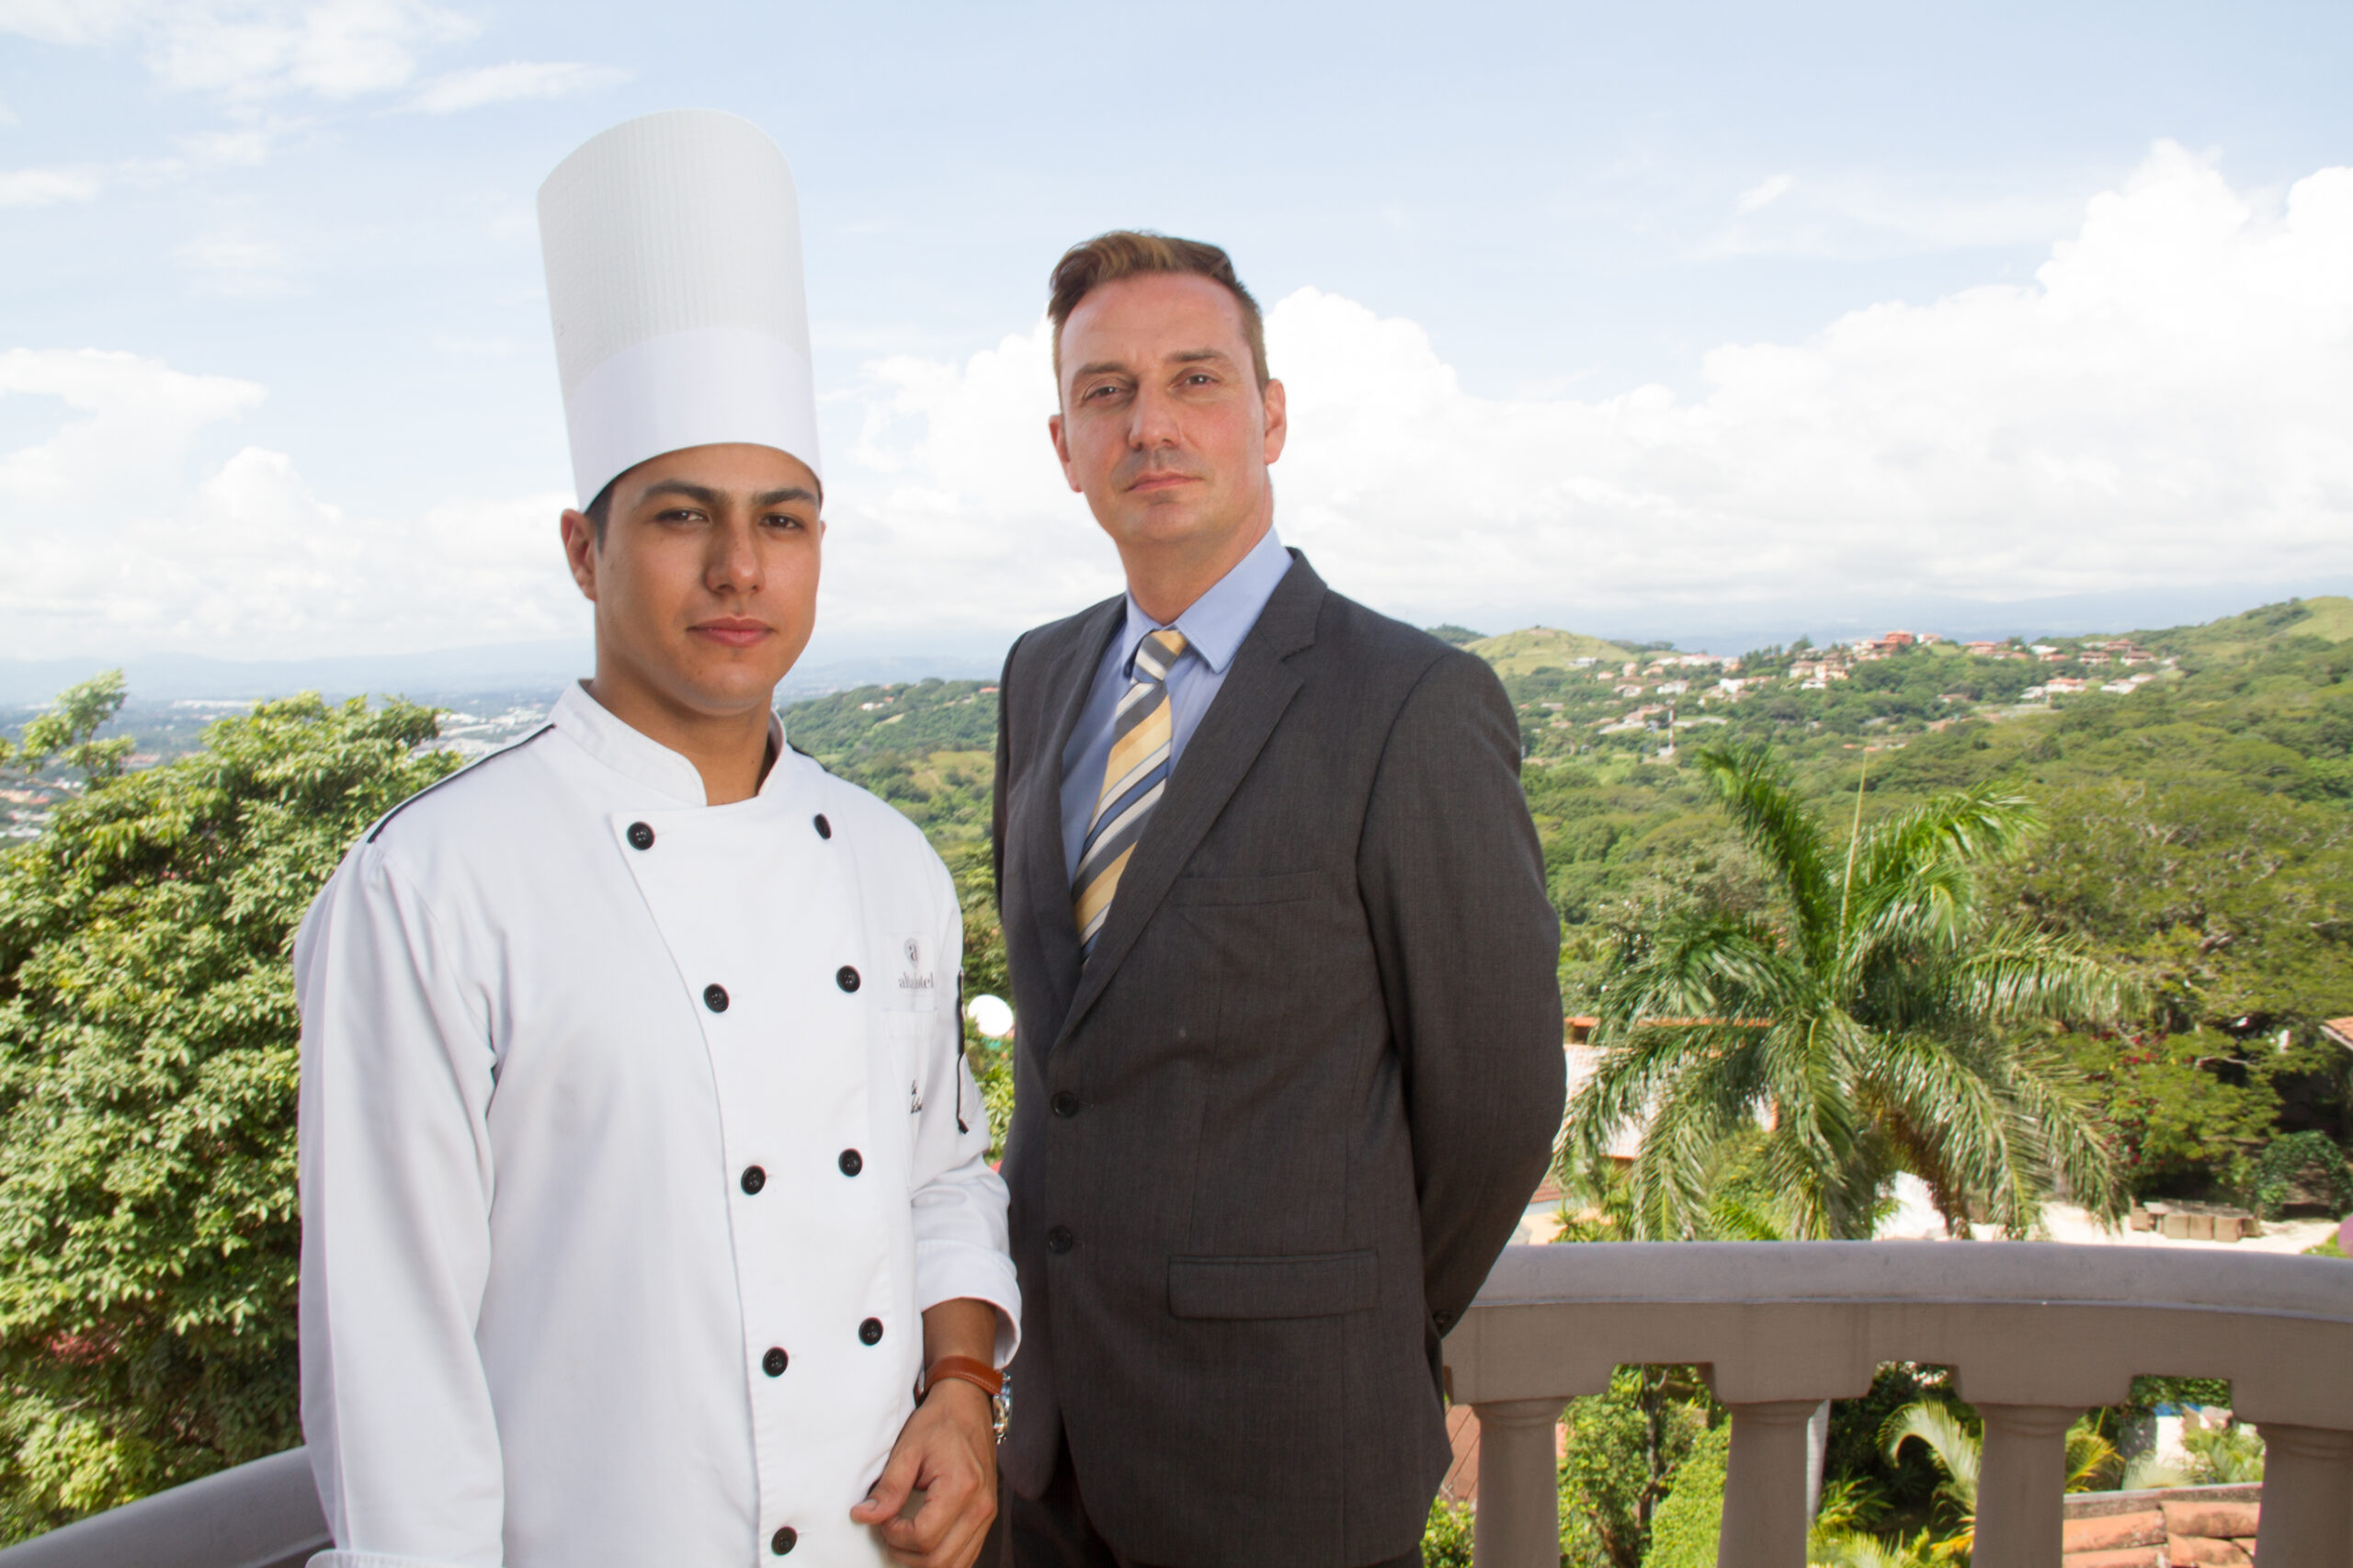 Chef costarricenses recibe reconocimiento de alianza gastronómica internacional